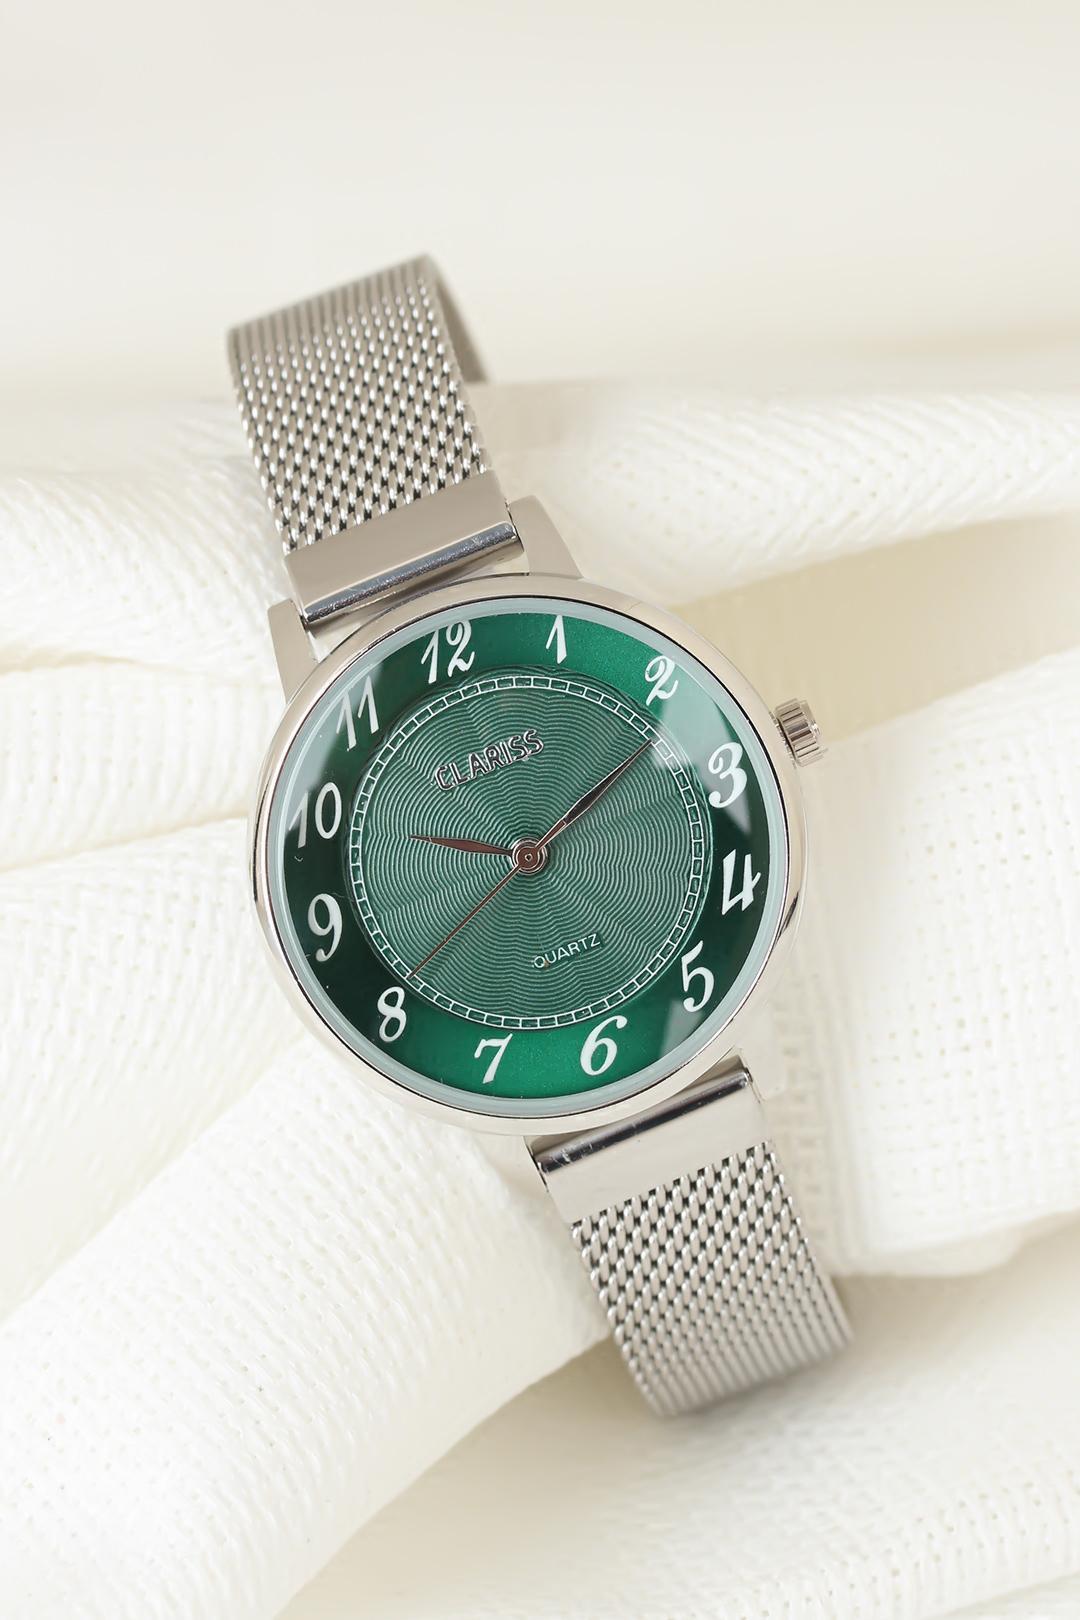 Silver Renk Kaplama Hasır Metal Kordonlu Yeşil Renk İç Tasarımlı Clariss Marka Bayan Kol Saati